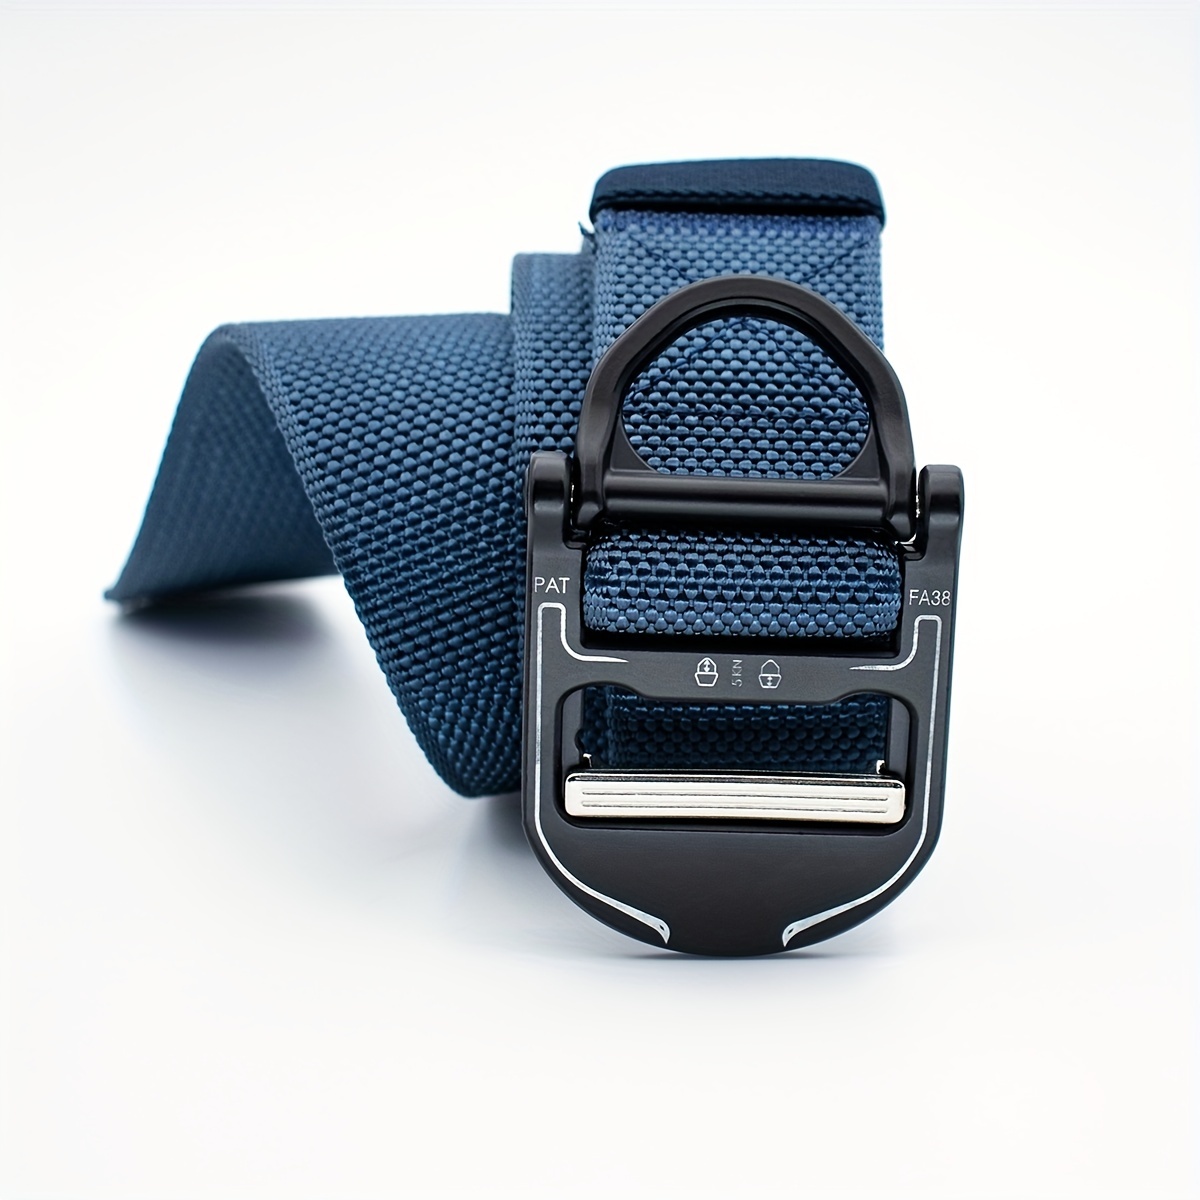 Cinturon de Hombre de Vestir Cinturones Militares para Hombre Correas  Casuales